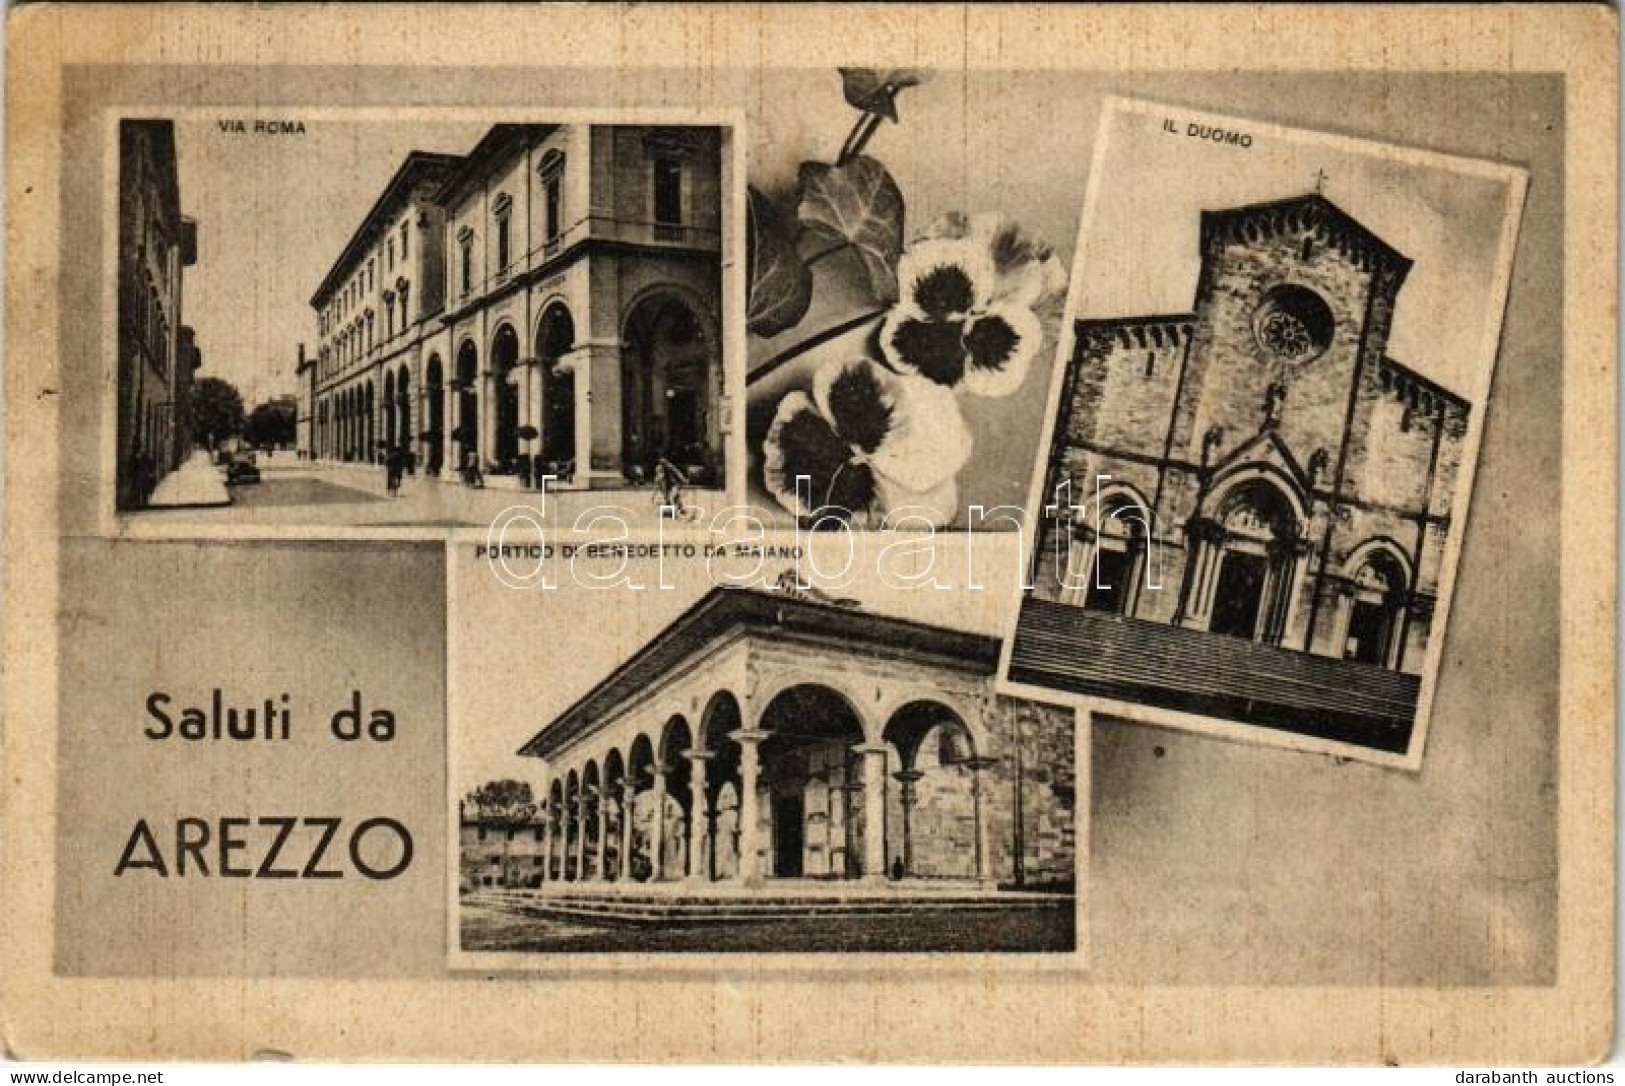 T2/T3 1942 Arezzo, Via Roma, Il Duomo, Portico Di Benedetto Da Maiano / Street View, Automobile, Bicycle, Cathedral. Ed. - Non Classificati